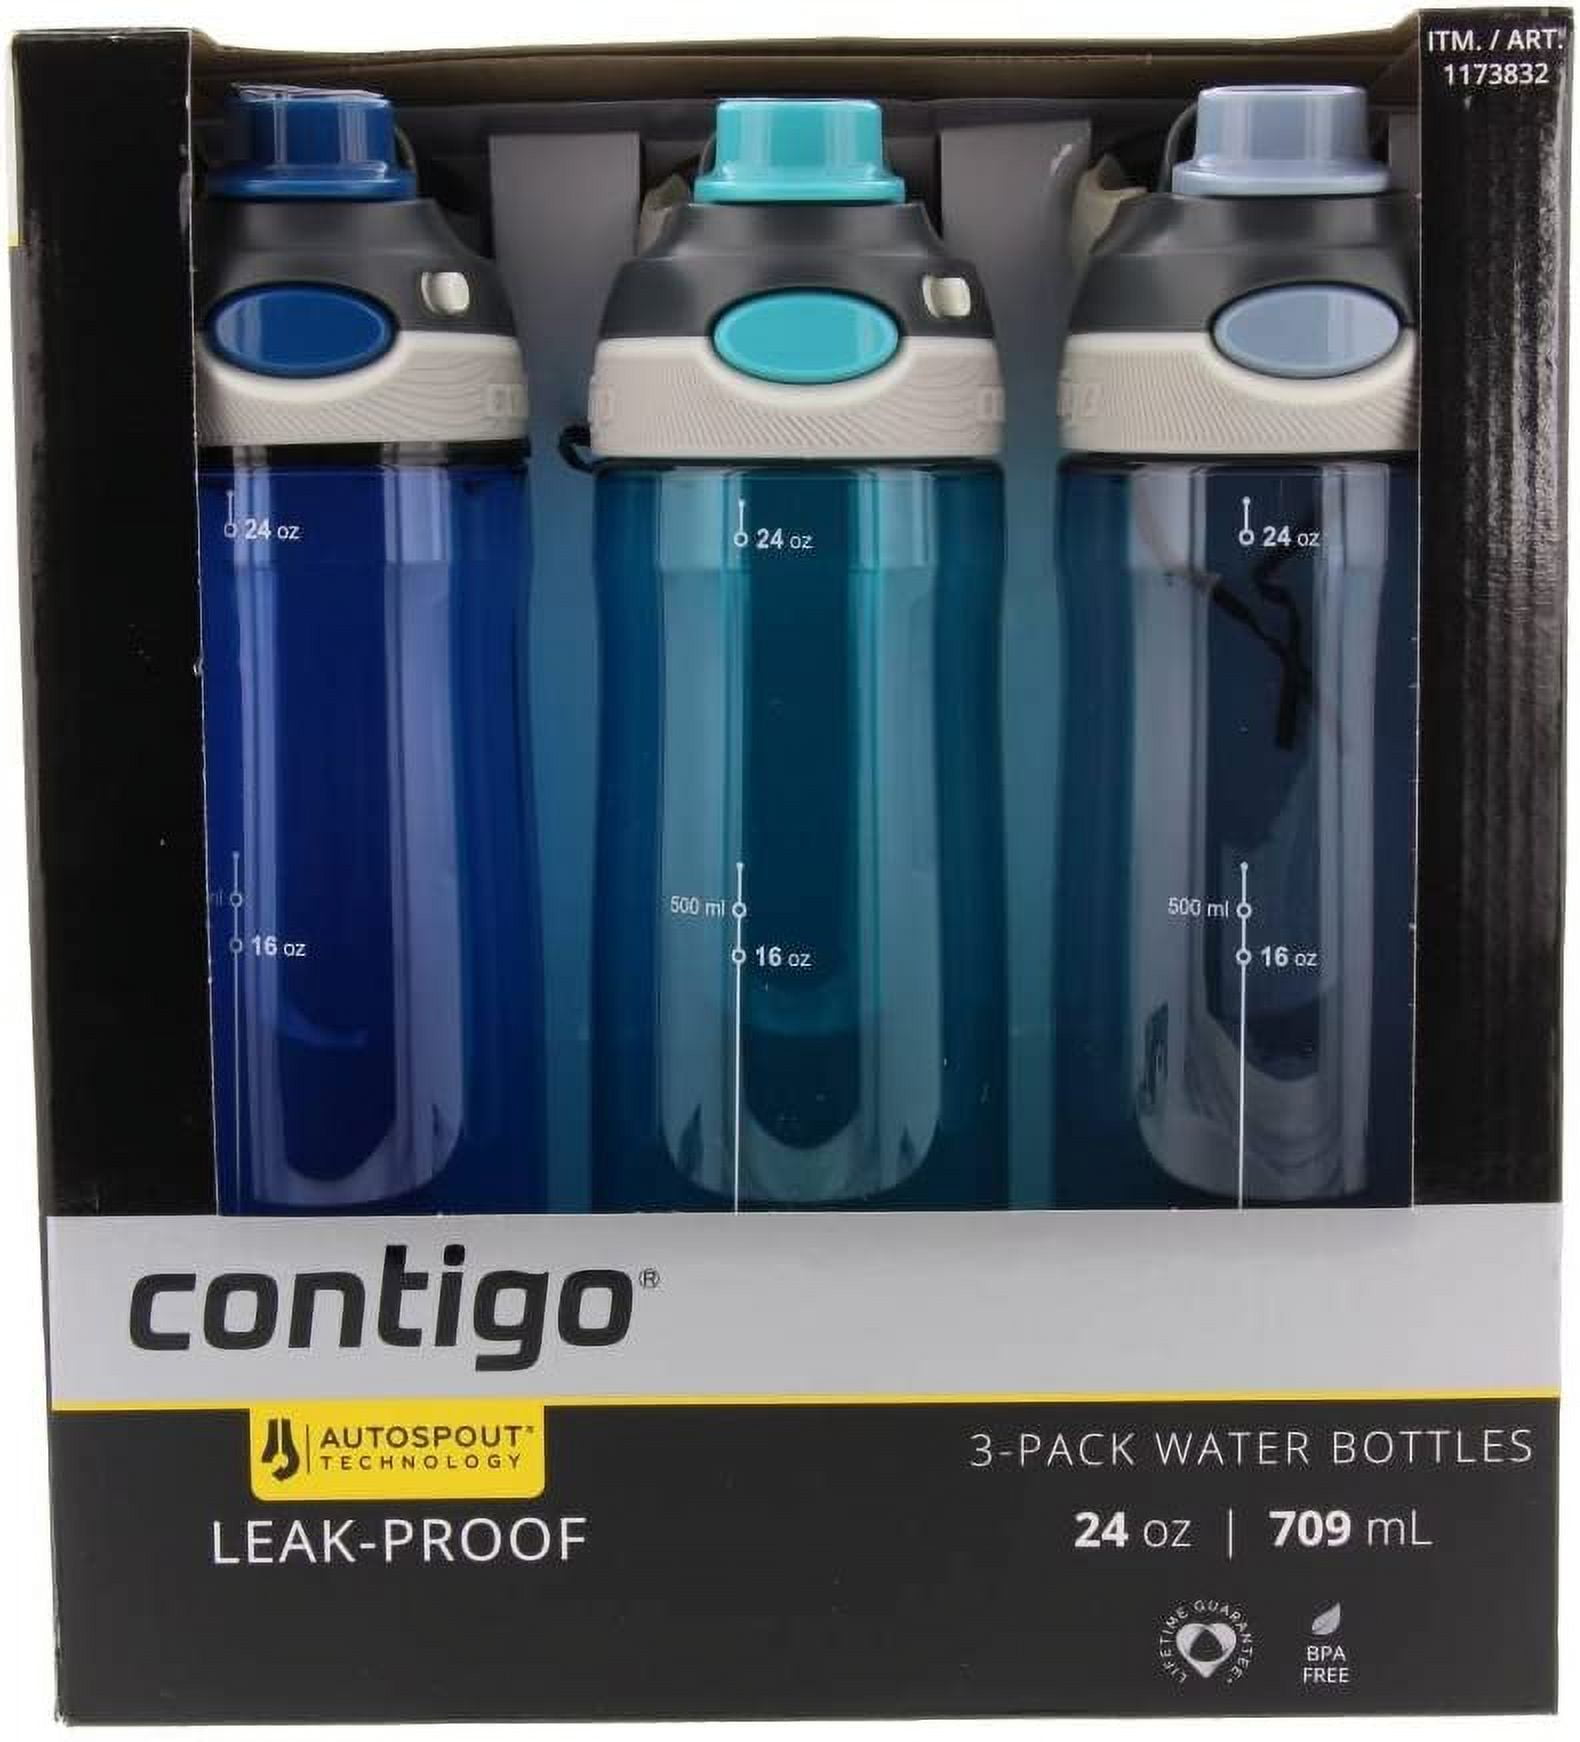  Contigo Chug Water Bottle - 24 oz. - 24 hr 142379-24HR